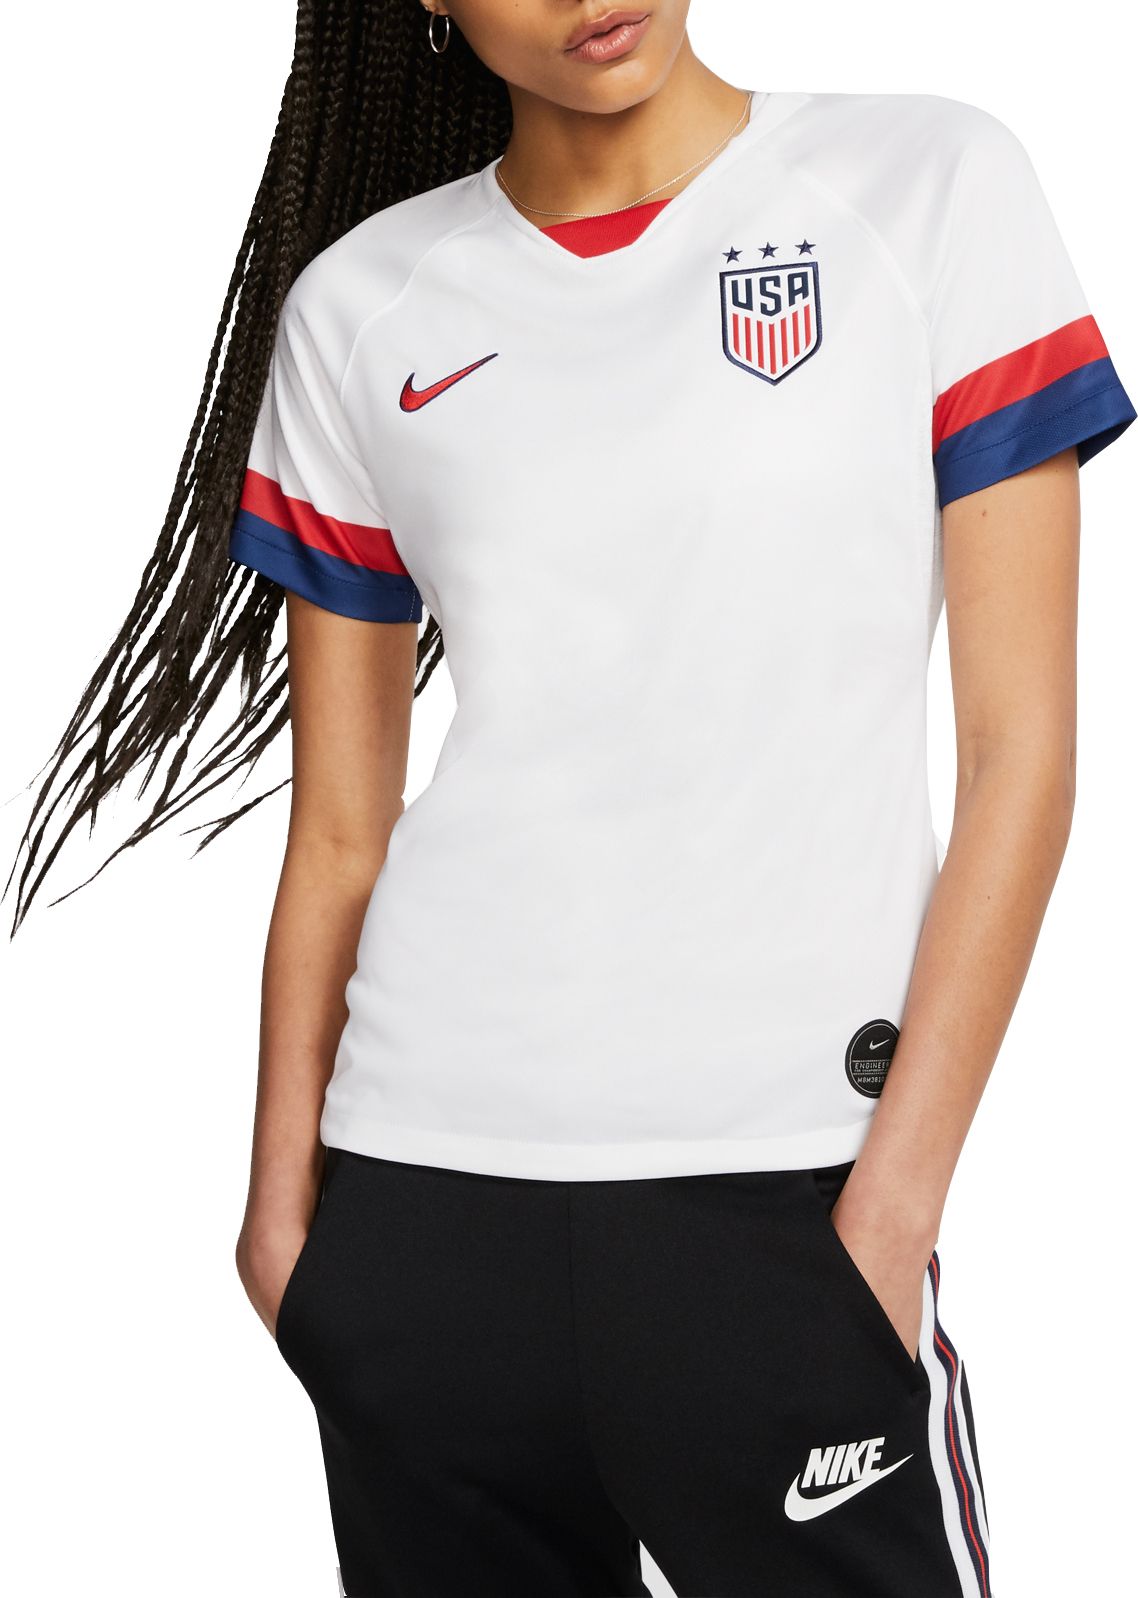 2019 women's usa soccer jersey